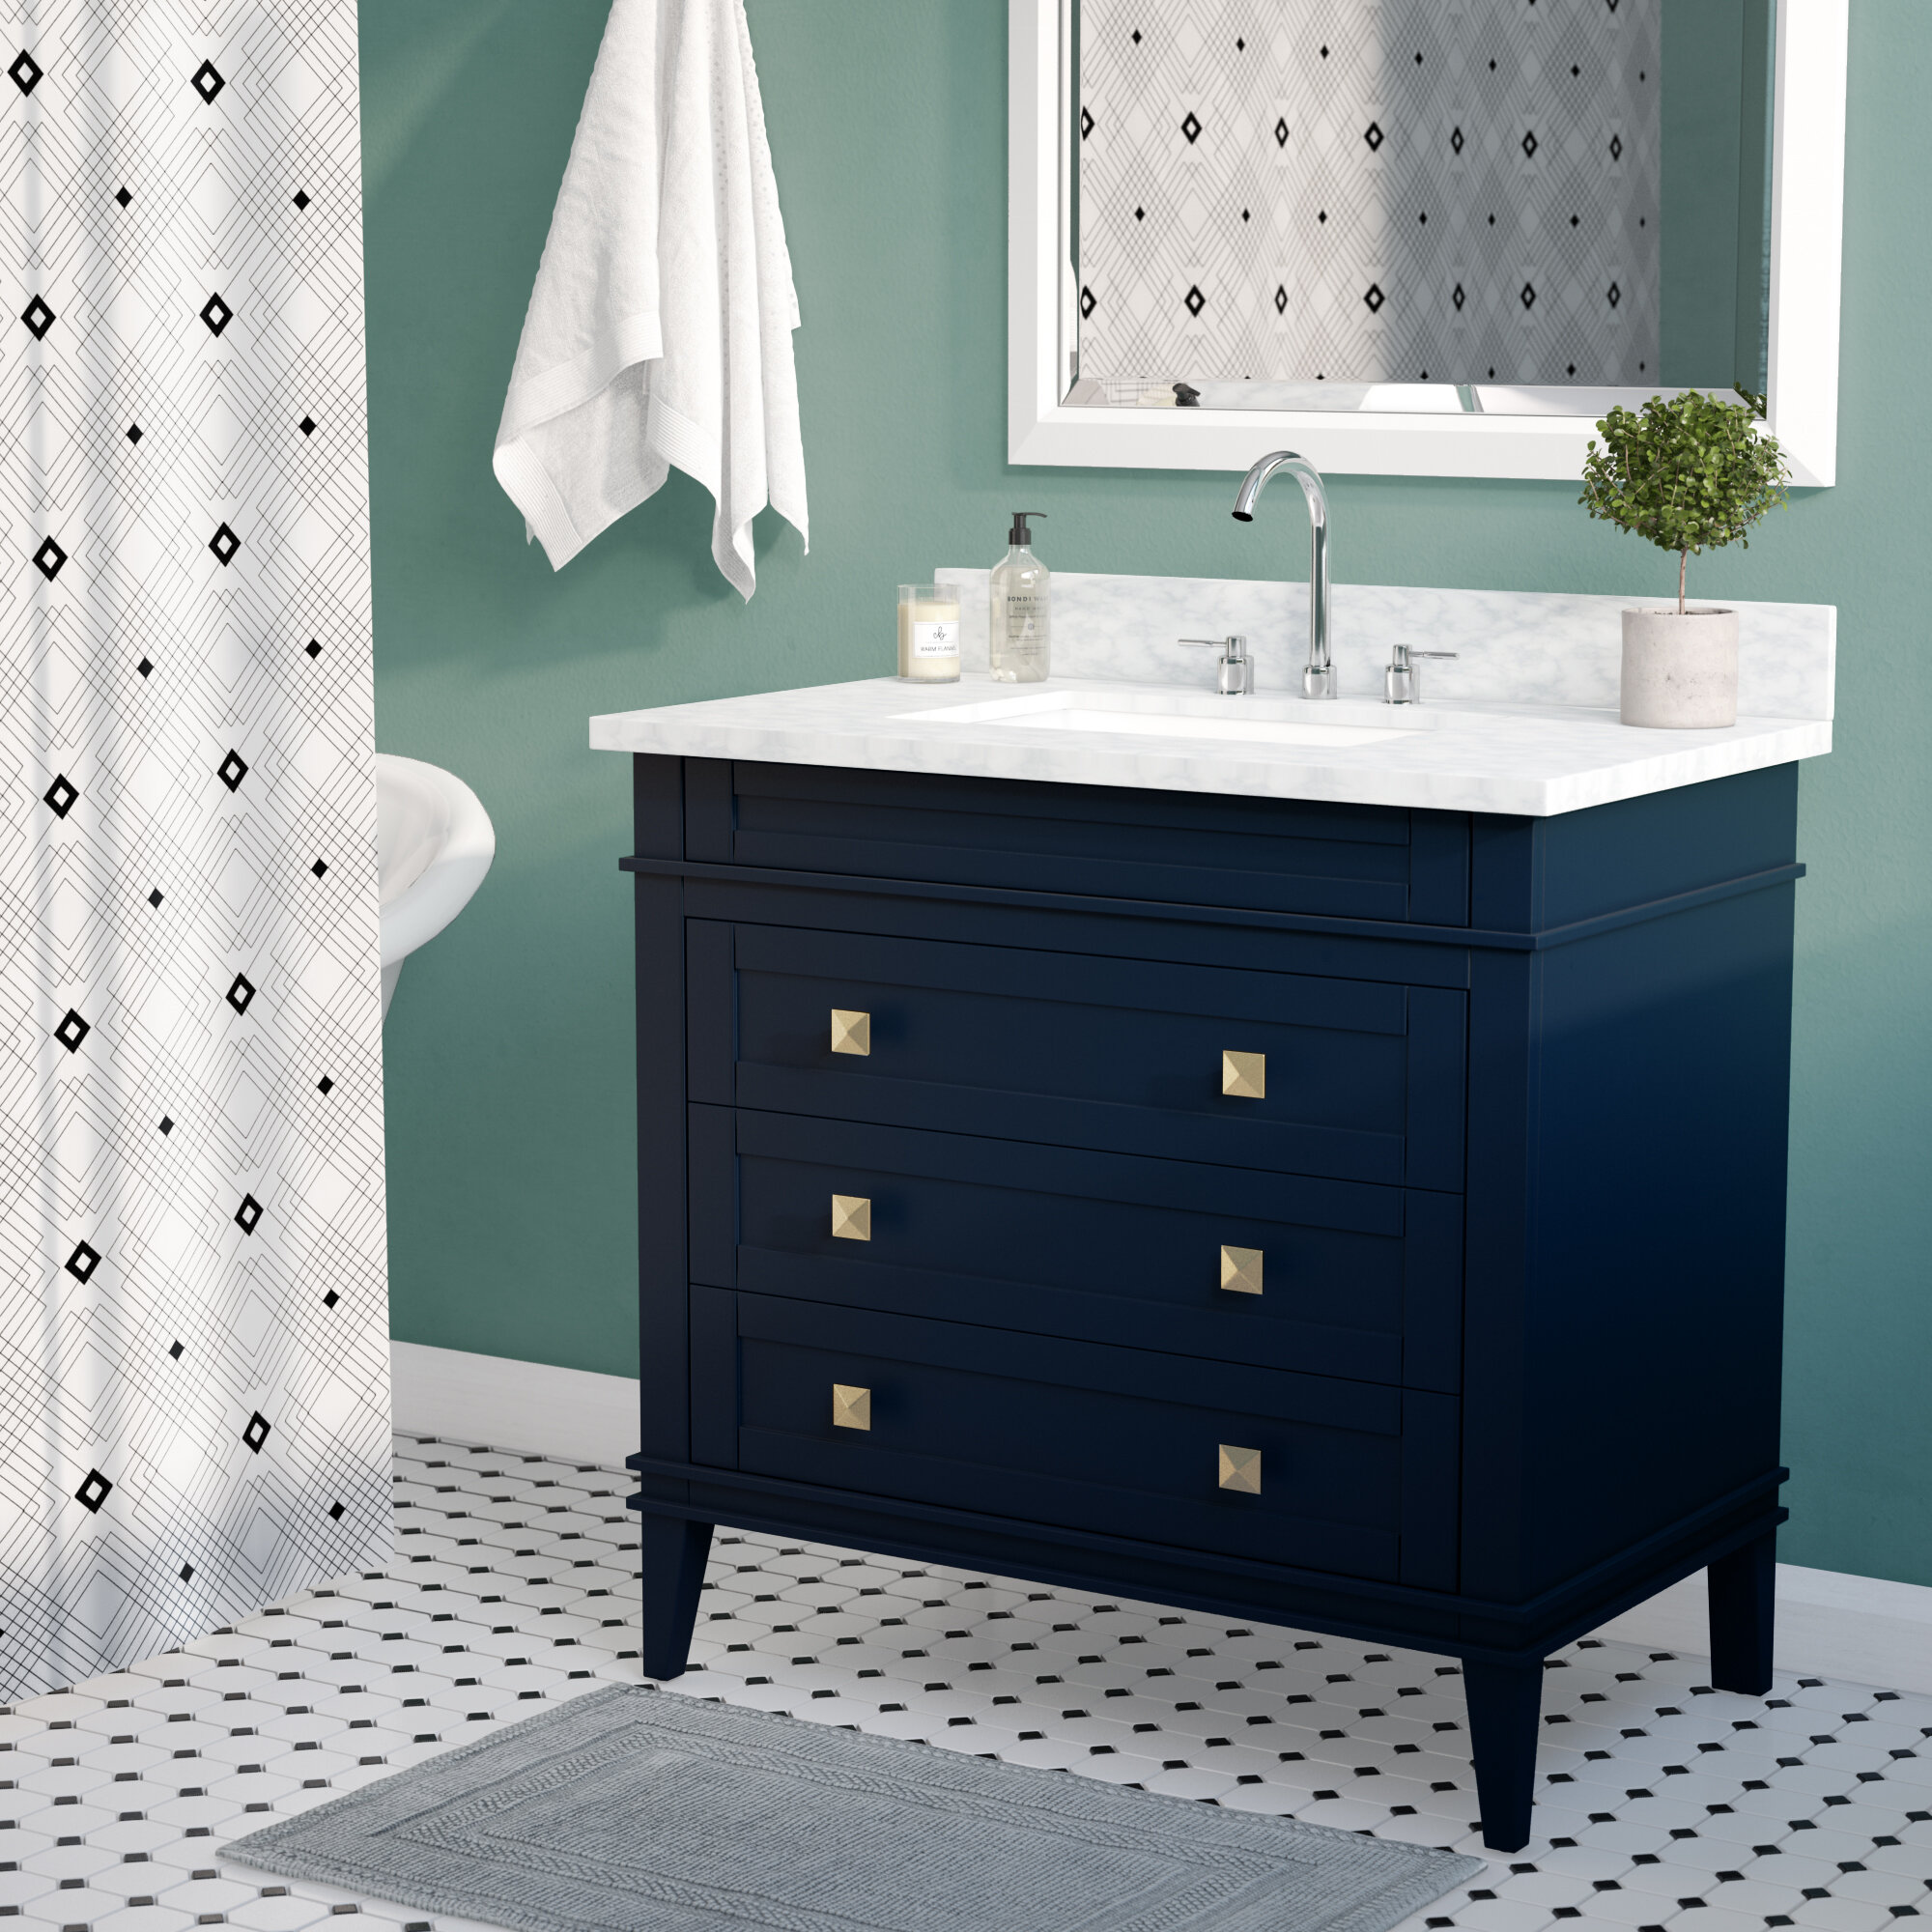 Wrought Studio Cy 36 Single Bathroom Vanity Set Reviews Wayfair